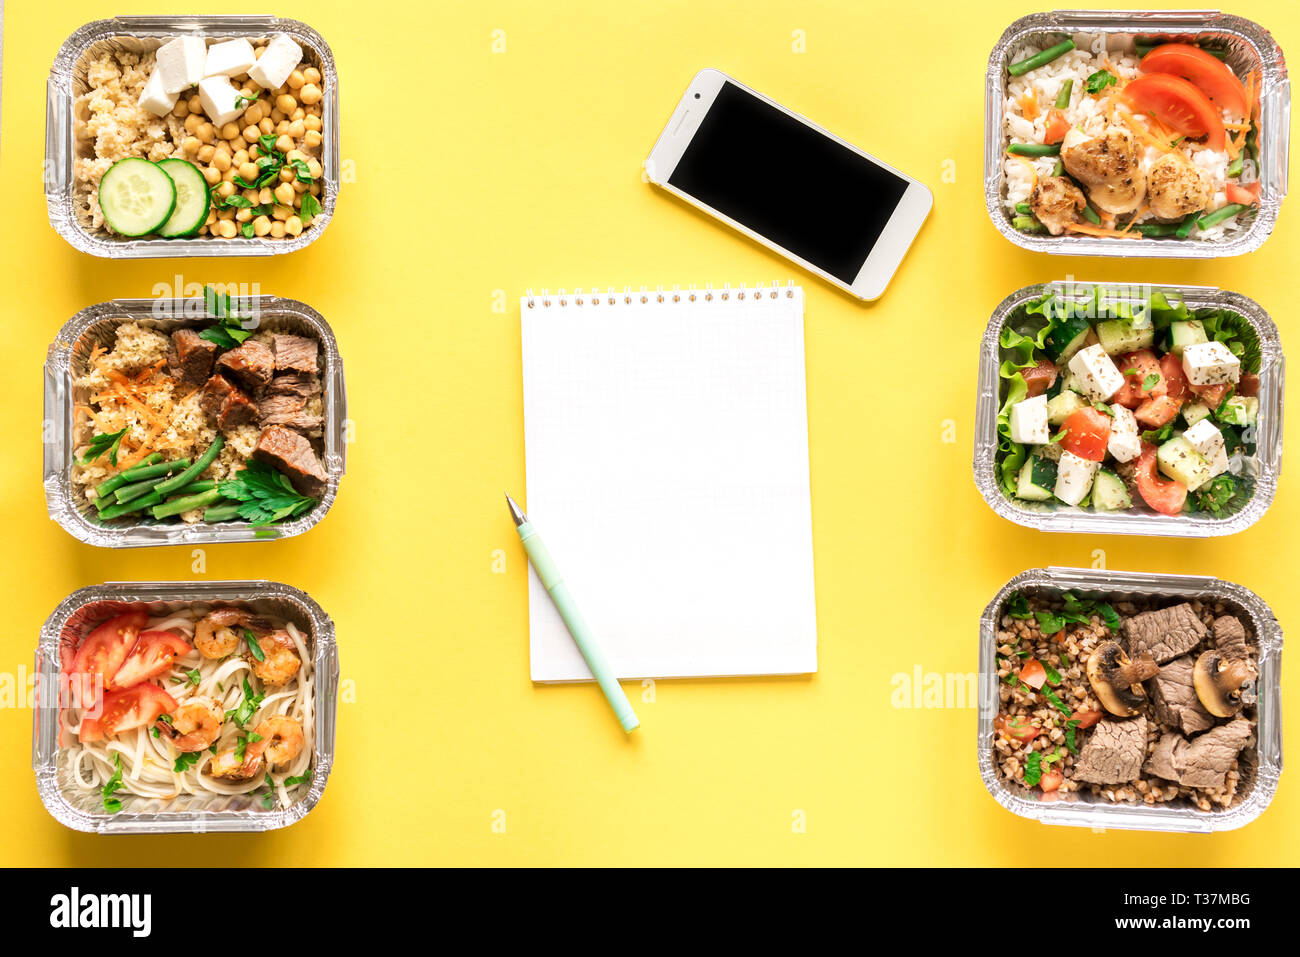 Gesunde Mahlzeiten in Folie Boxen und Smartphone auf Gelb, Ansicht von oben, flach. Gesundes Essen Lieferung Konzept. Fitness Ernährung Ernährung, kopieren. Stockfoto